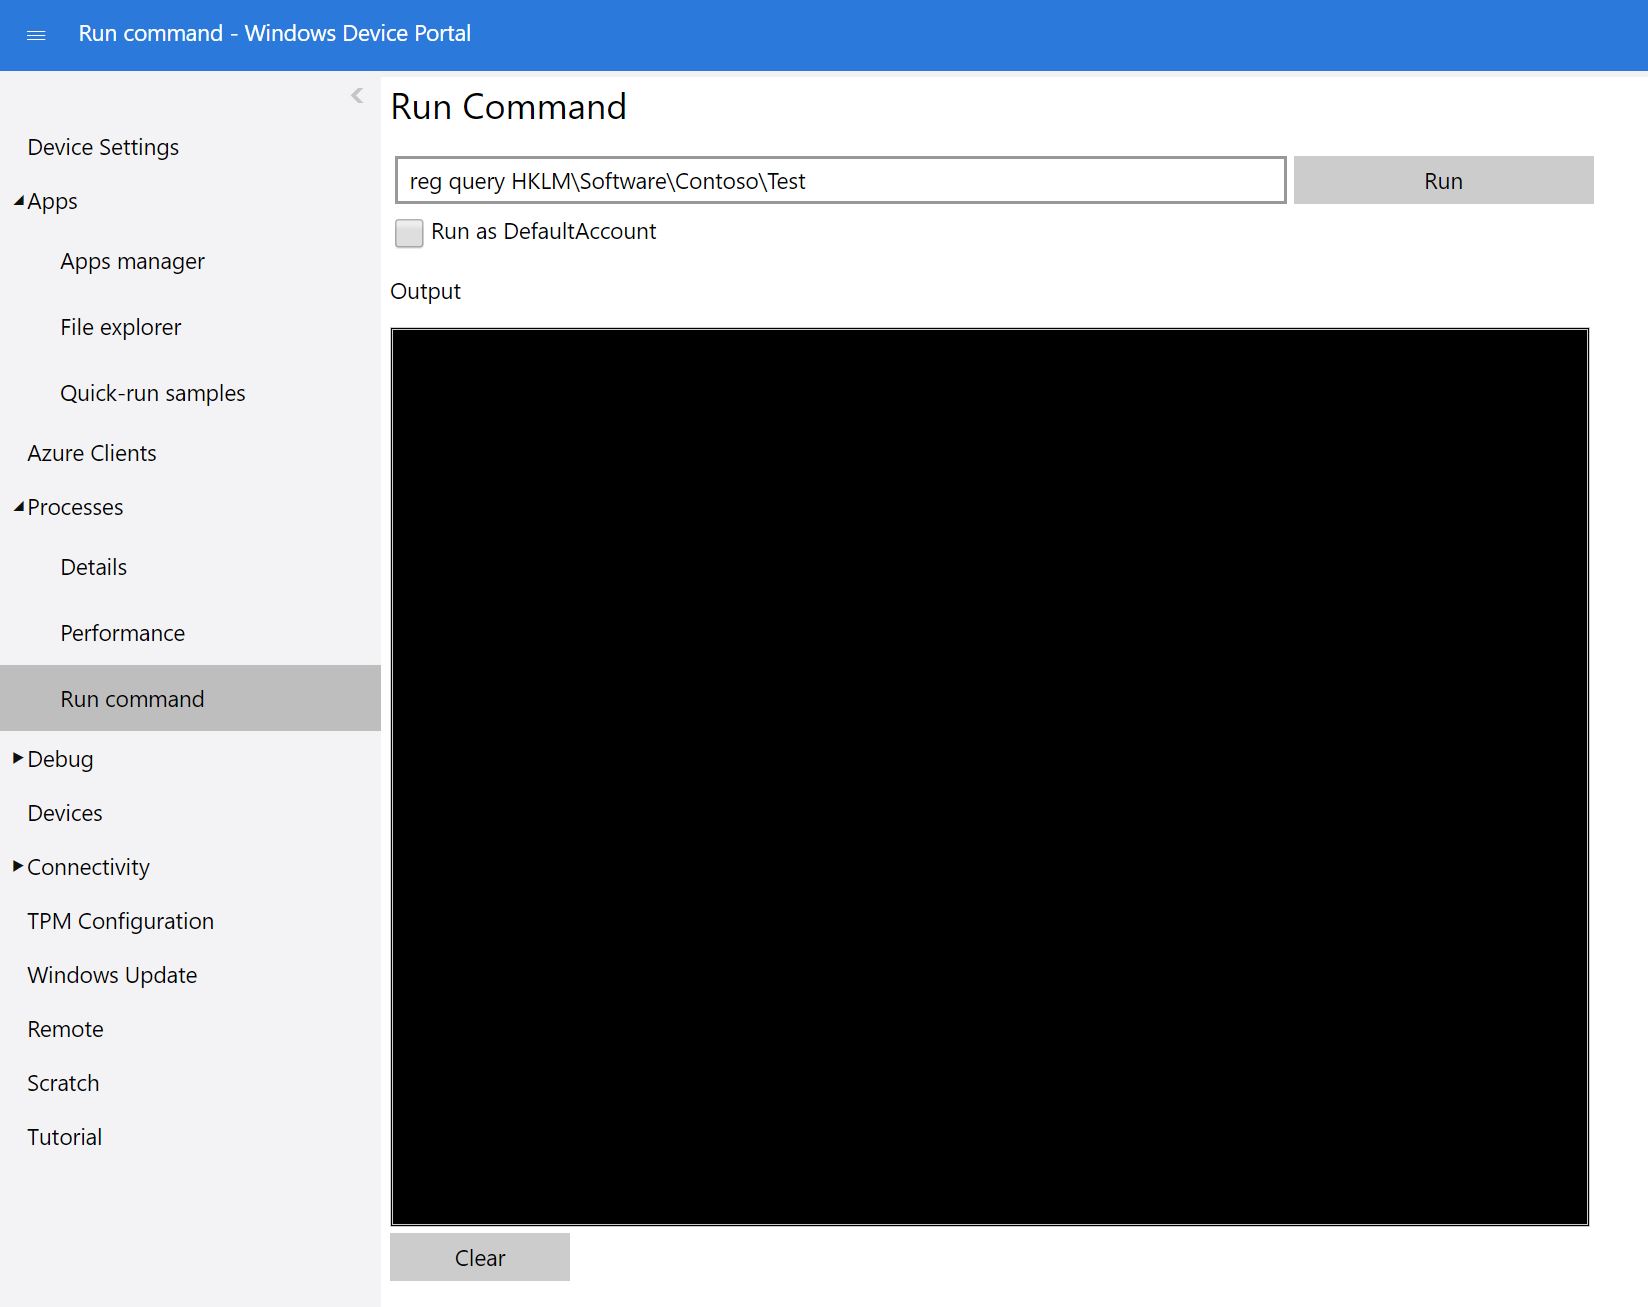 Run command in the Windows Device Portal